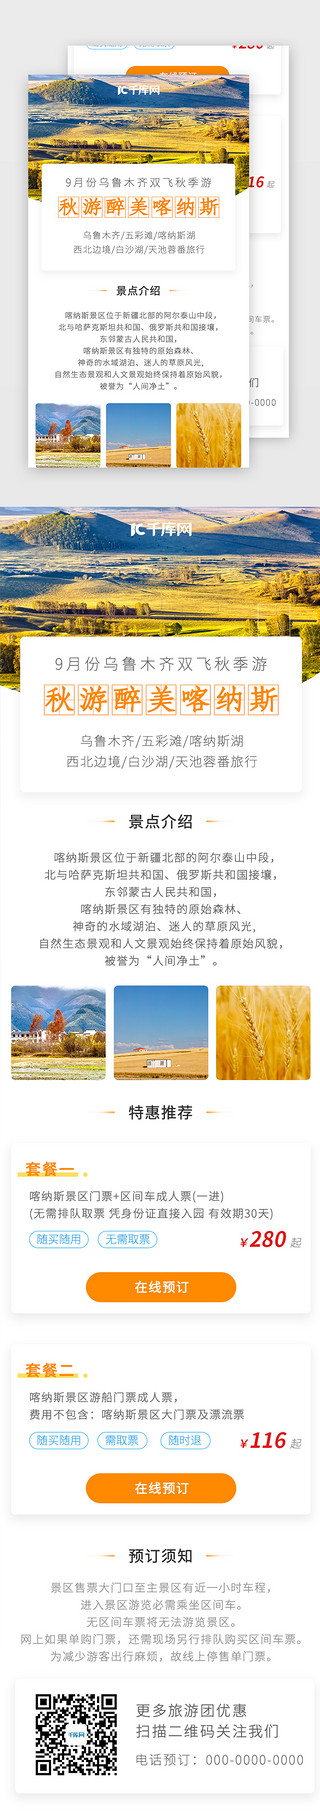 旅游活动海报UI设计素材_秋季旅游优惠活动图H5